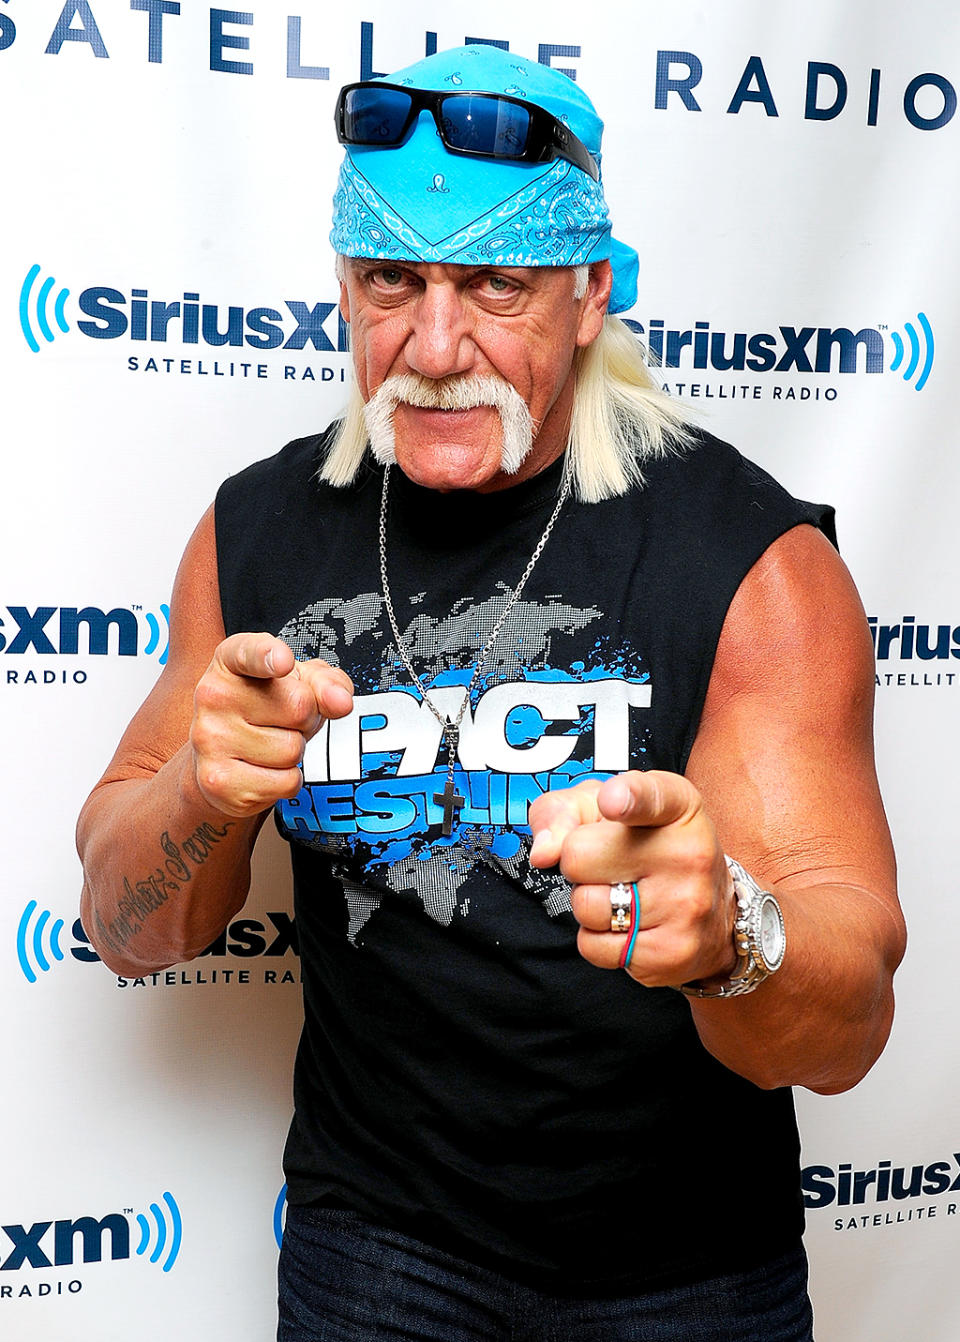 21. Hulk Hogan sues Gawker — and wins!